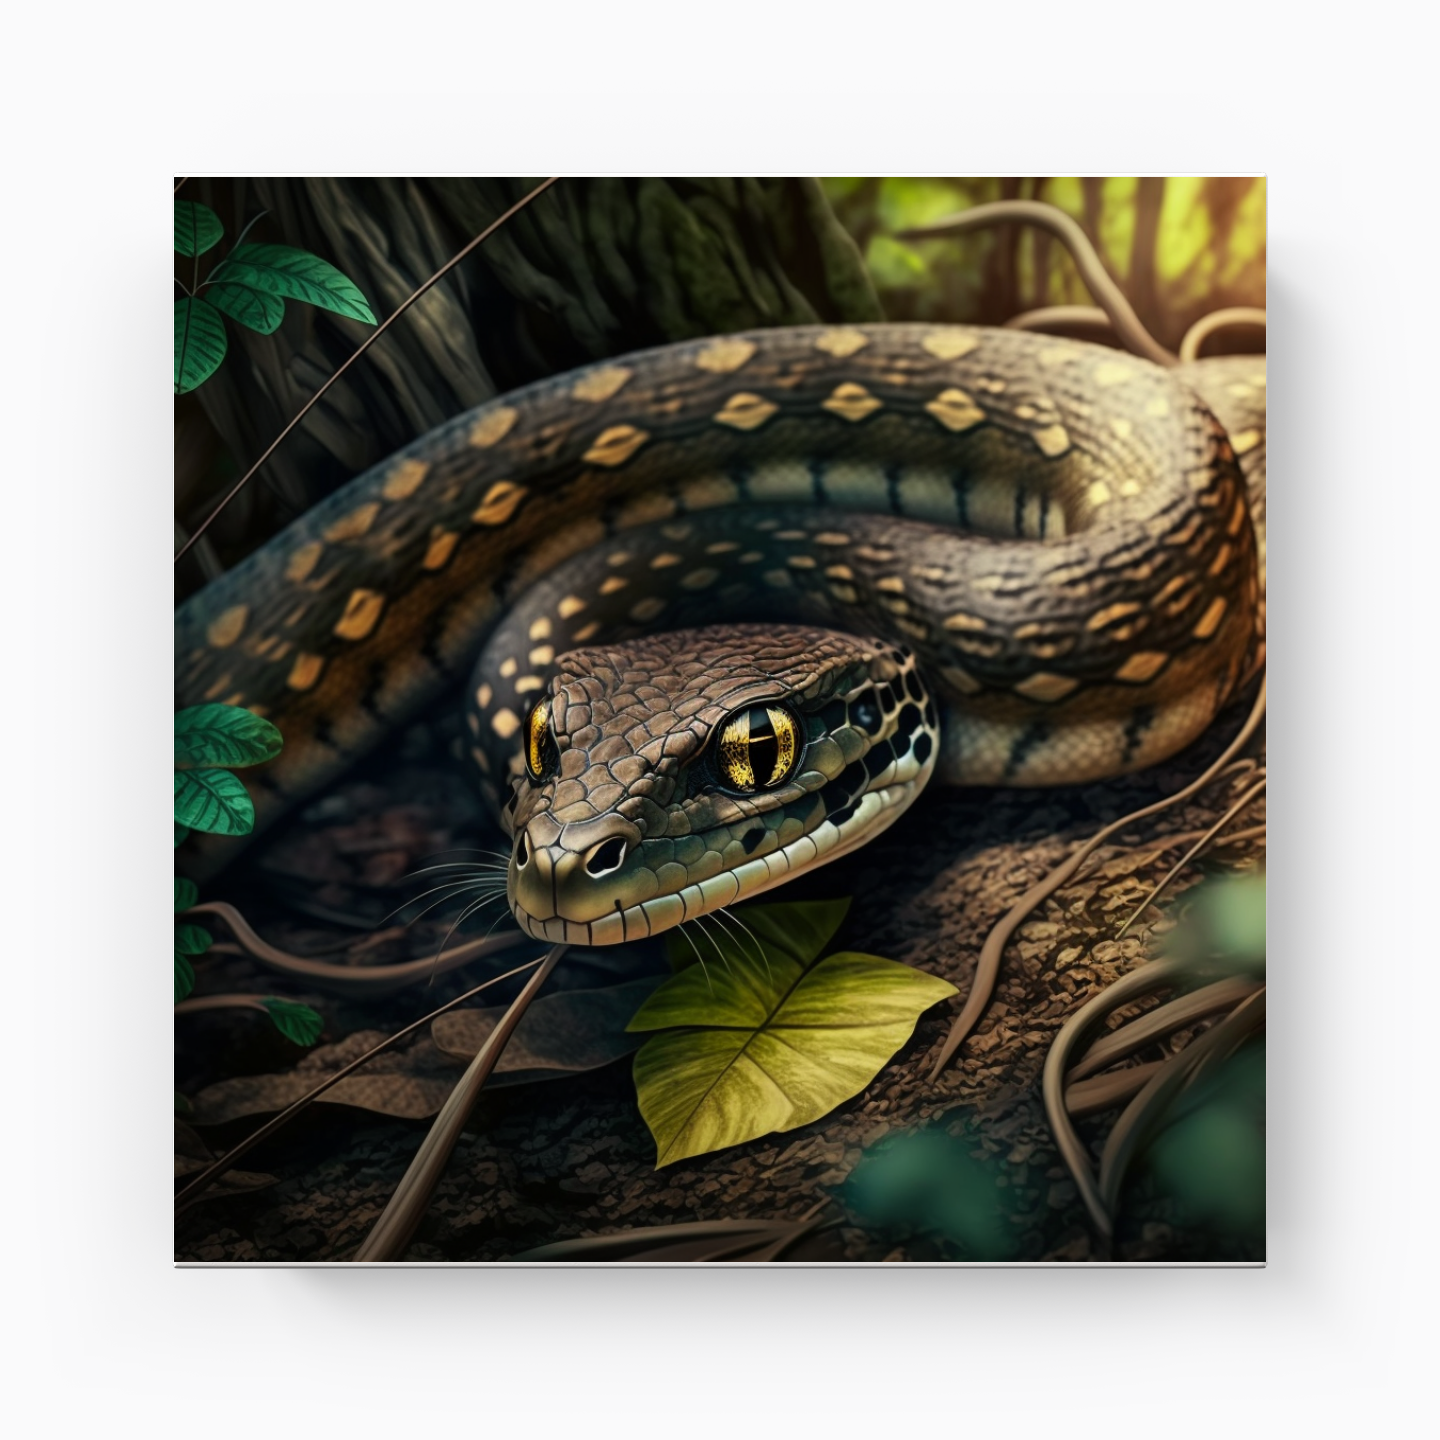 Kedi gözlü yılan - Kanvas Tablo